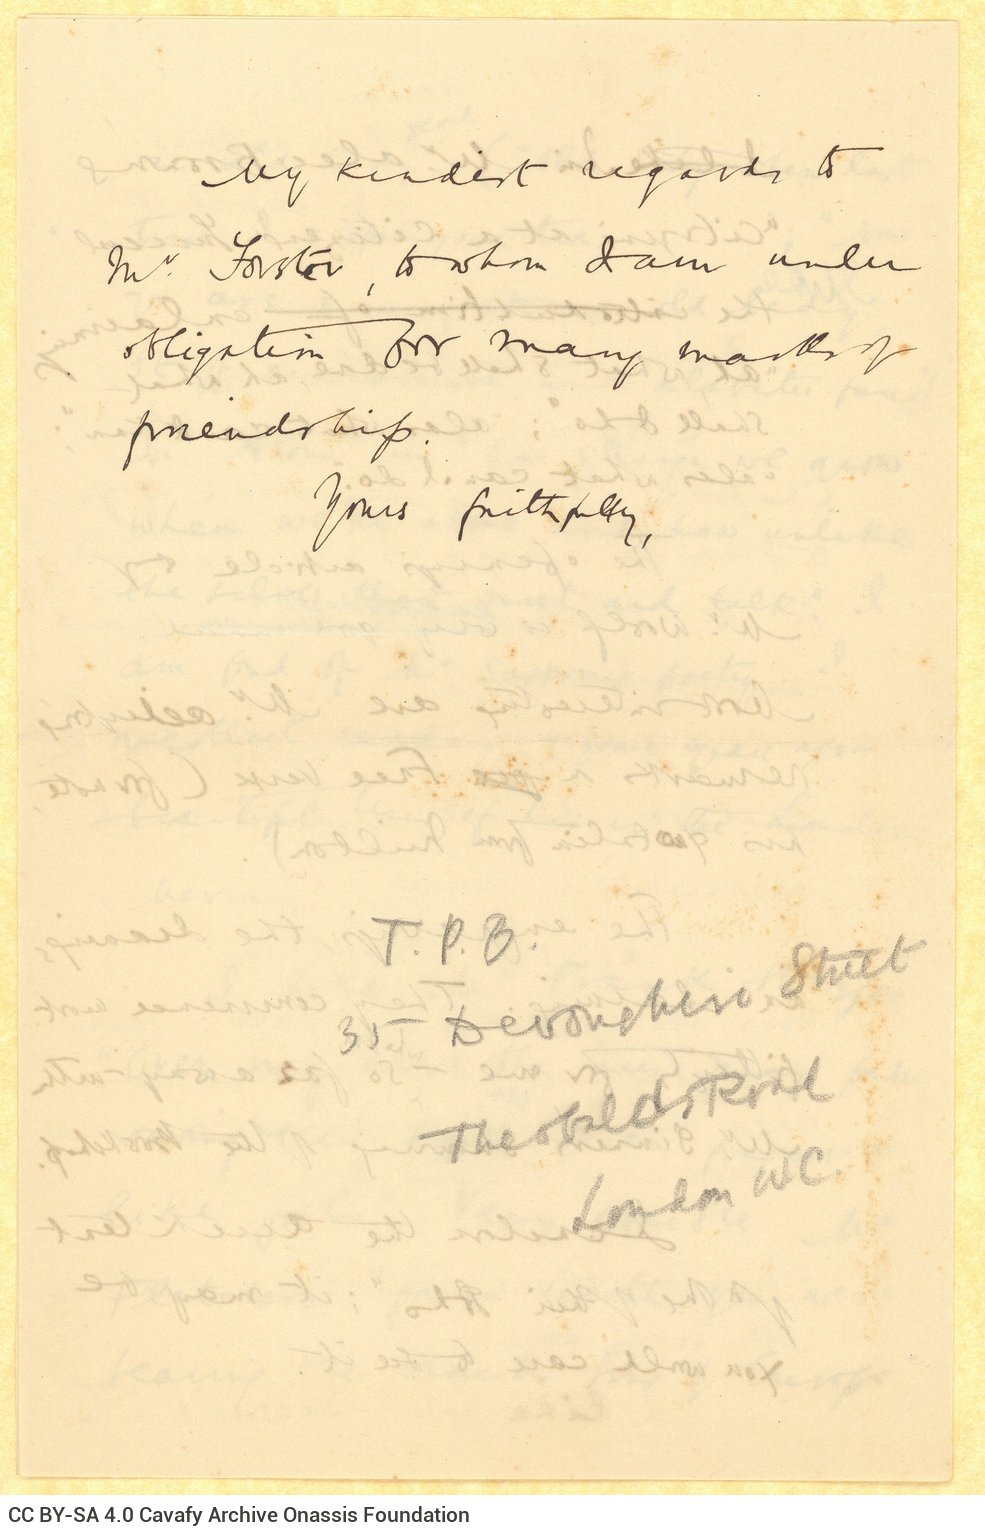 Χειρόγραφο σχέδιο επιστολής του Καβάφη προς τον Χάρολντ Έντουαρντ Μ